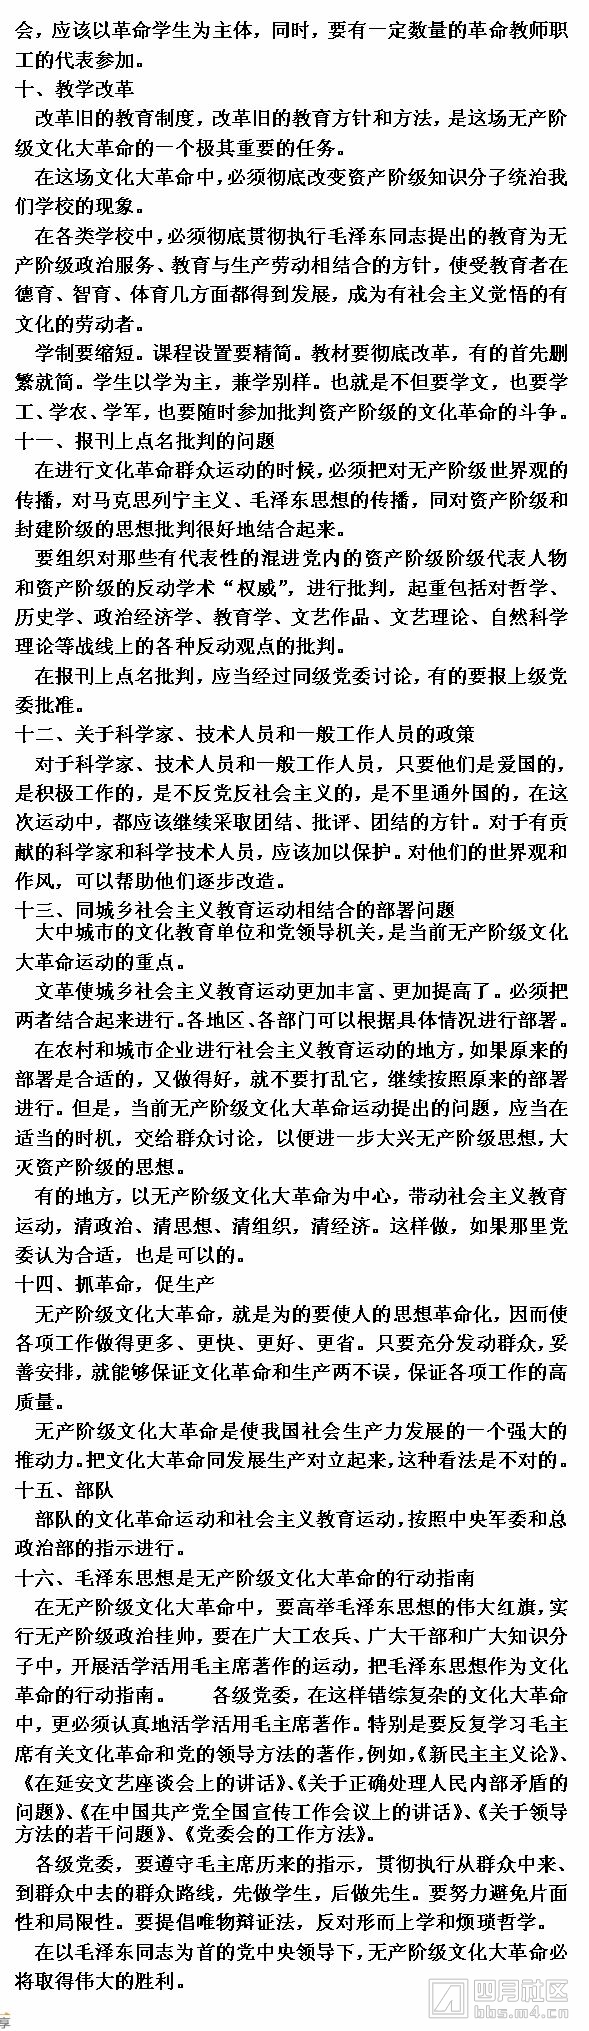 3中国共产党中央委员会关于无产阶级文化大革命的决定.jpg